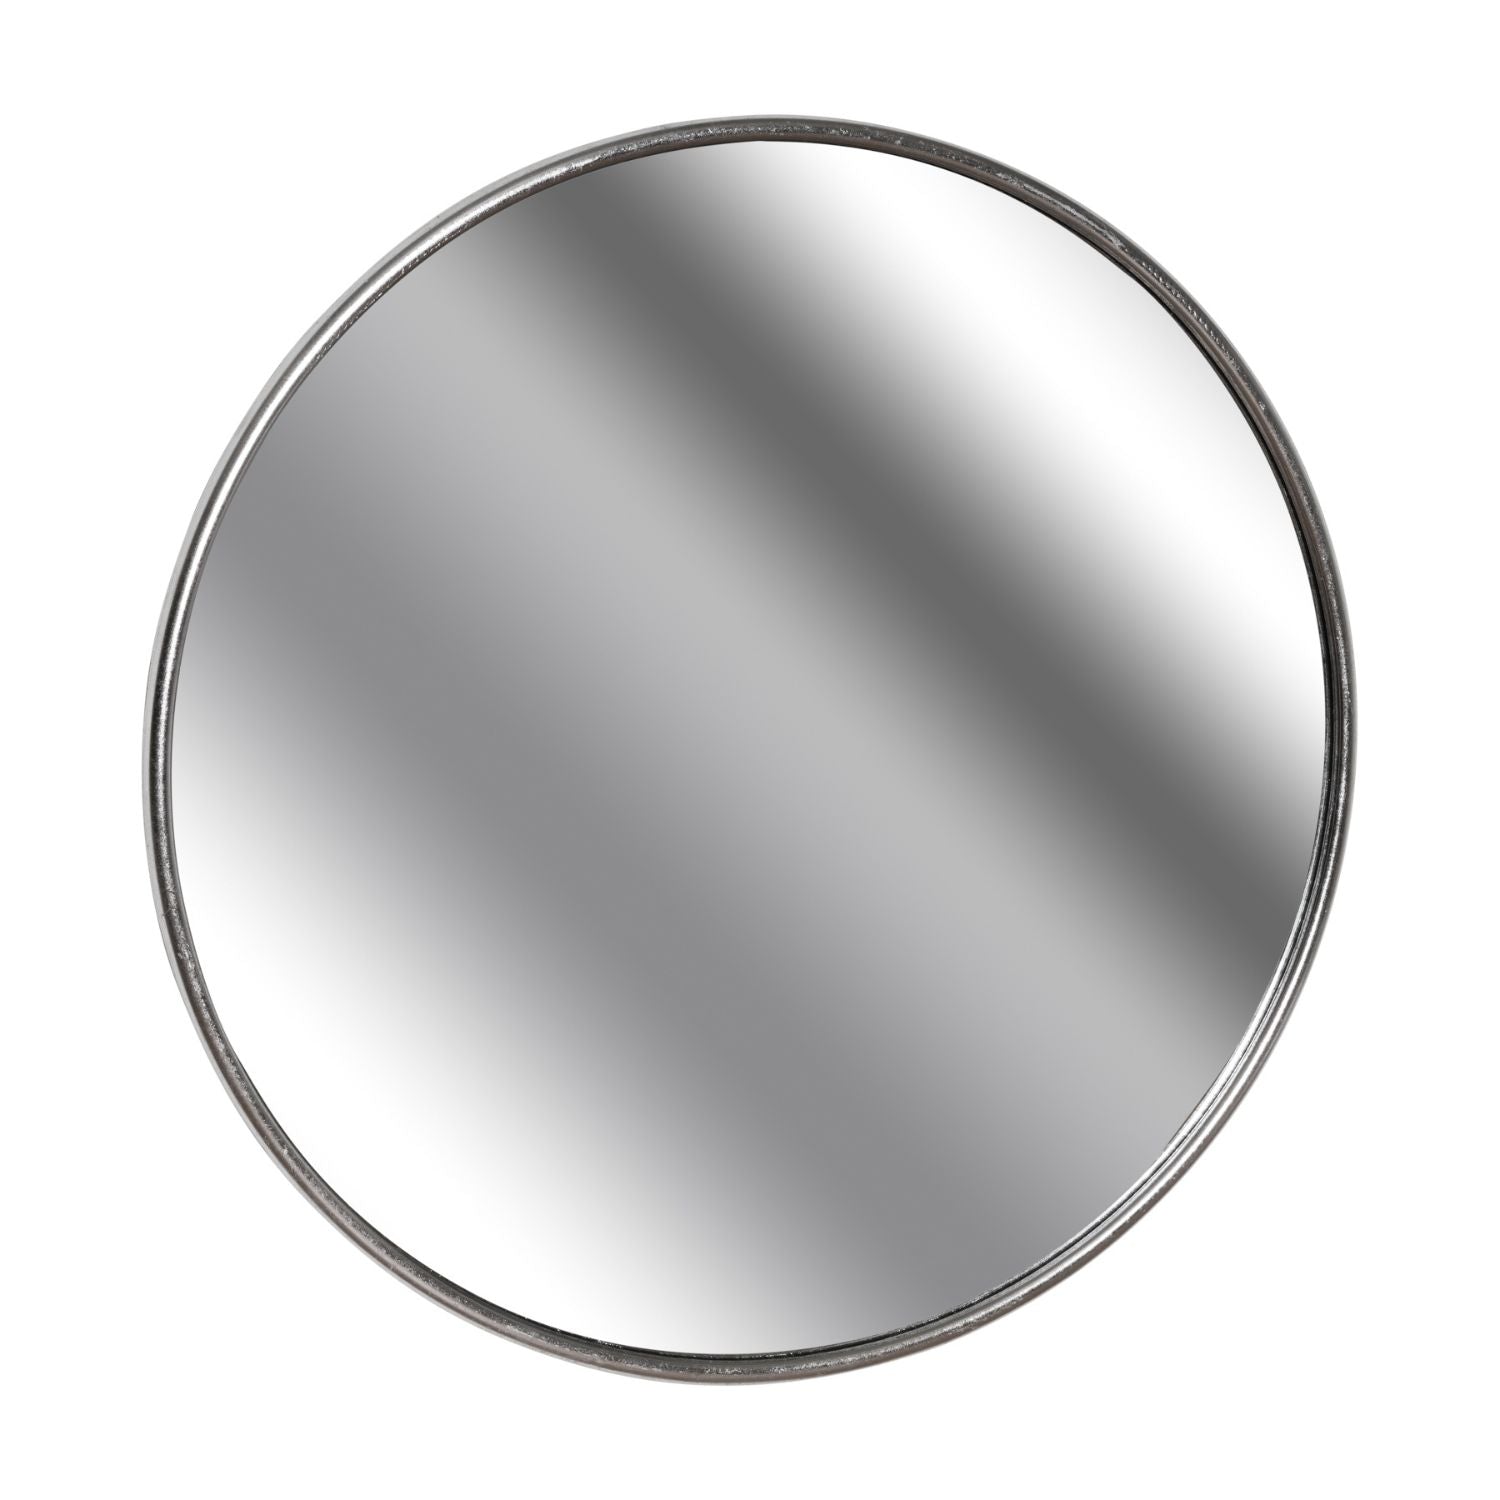 Circular silver wall mirror